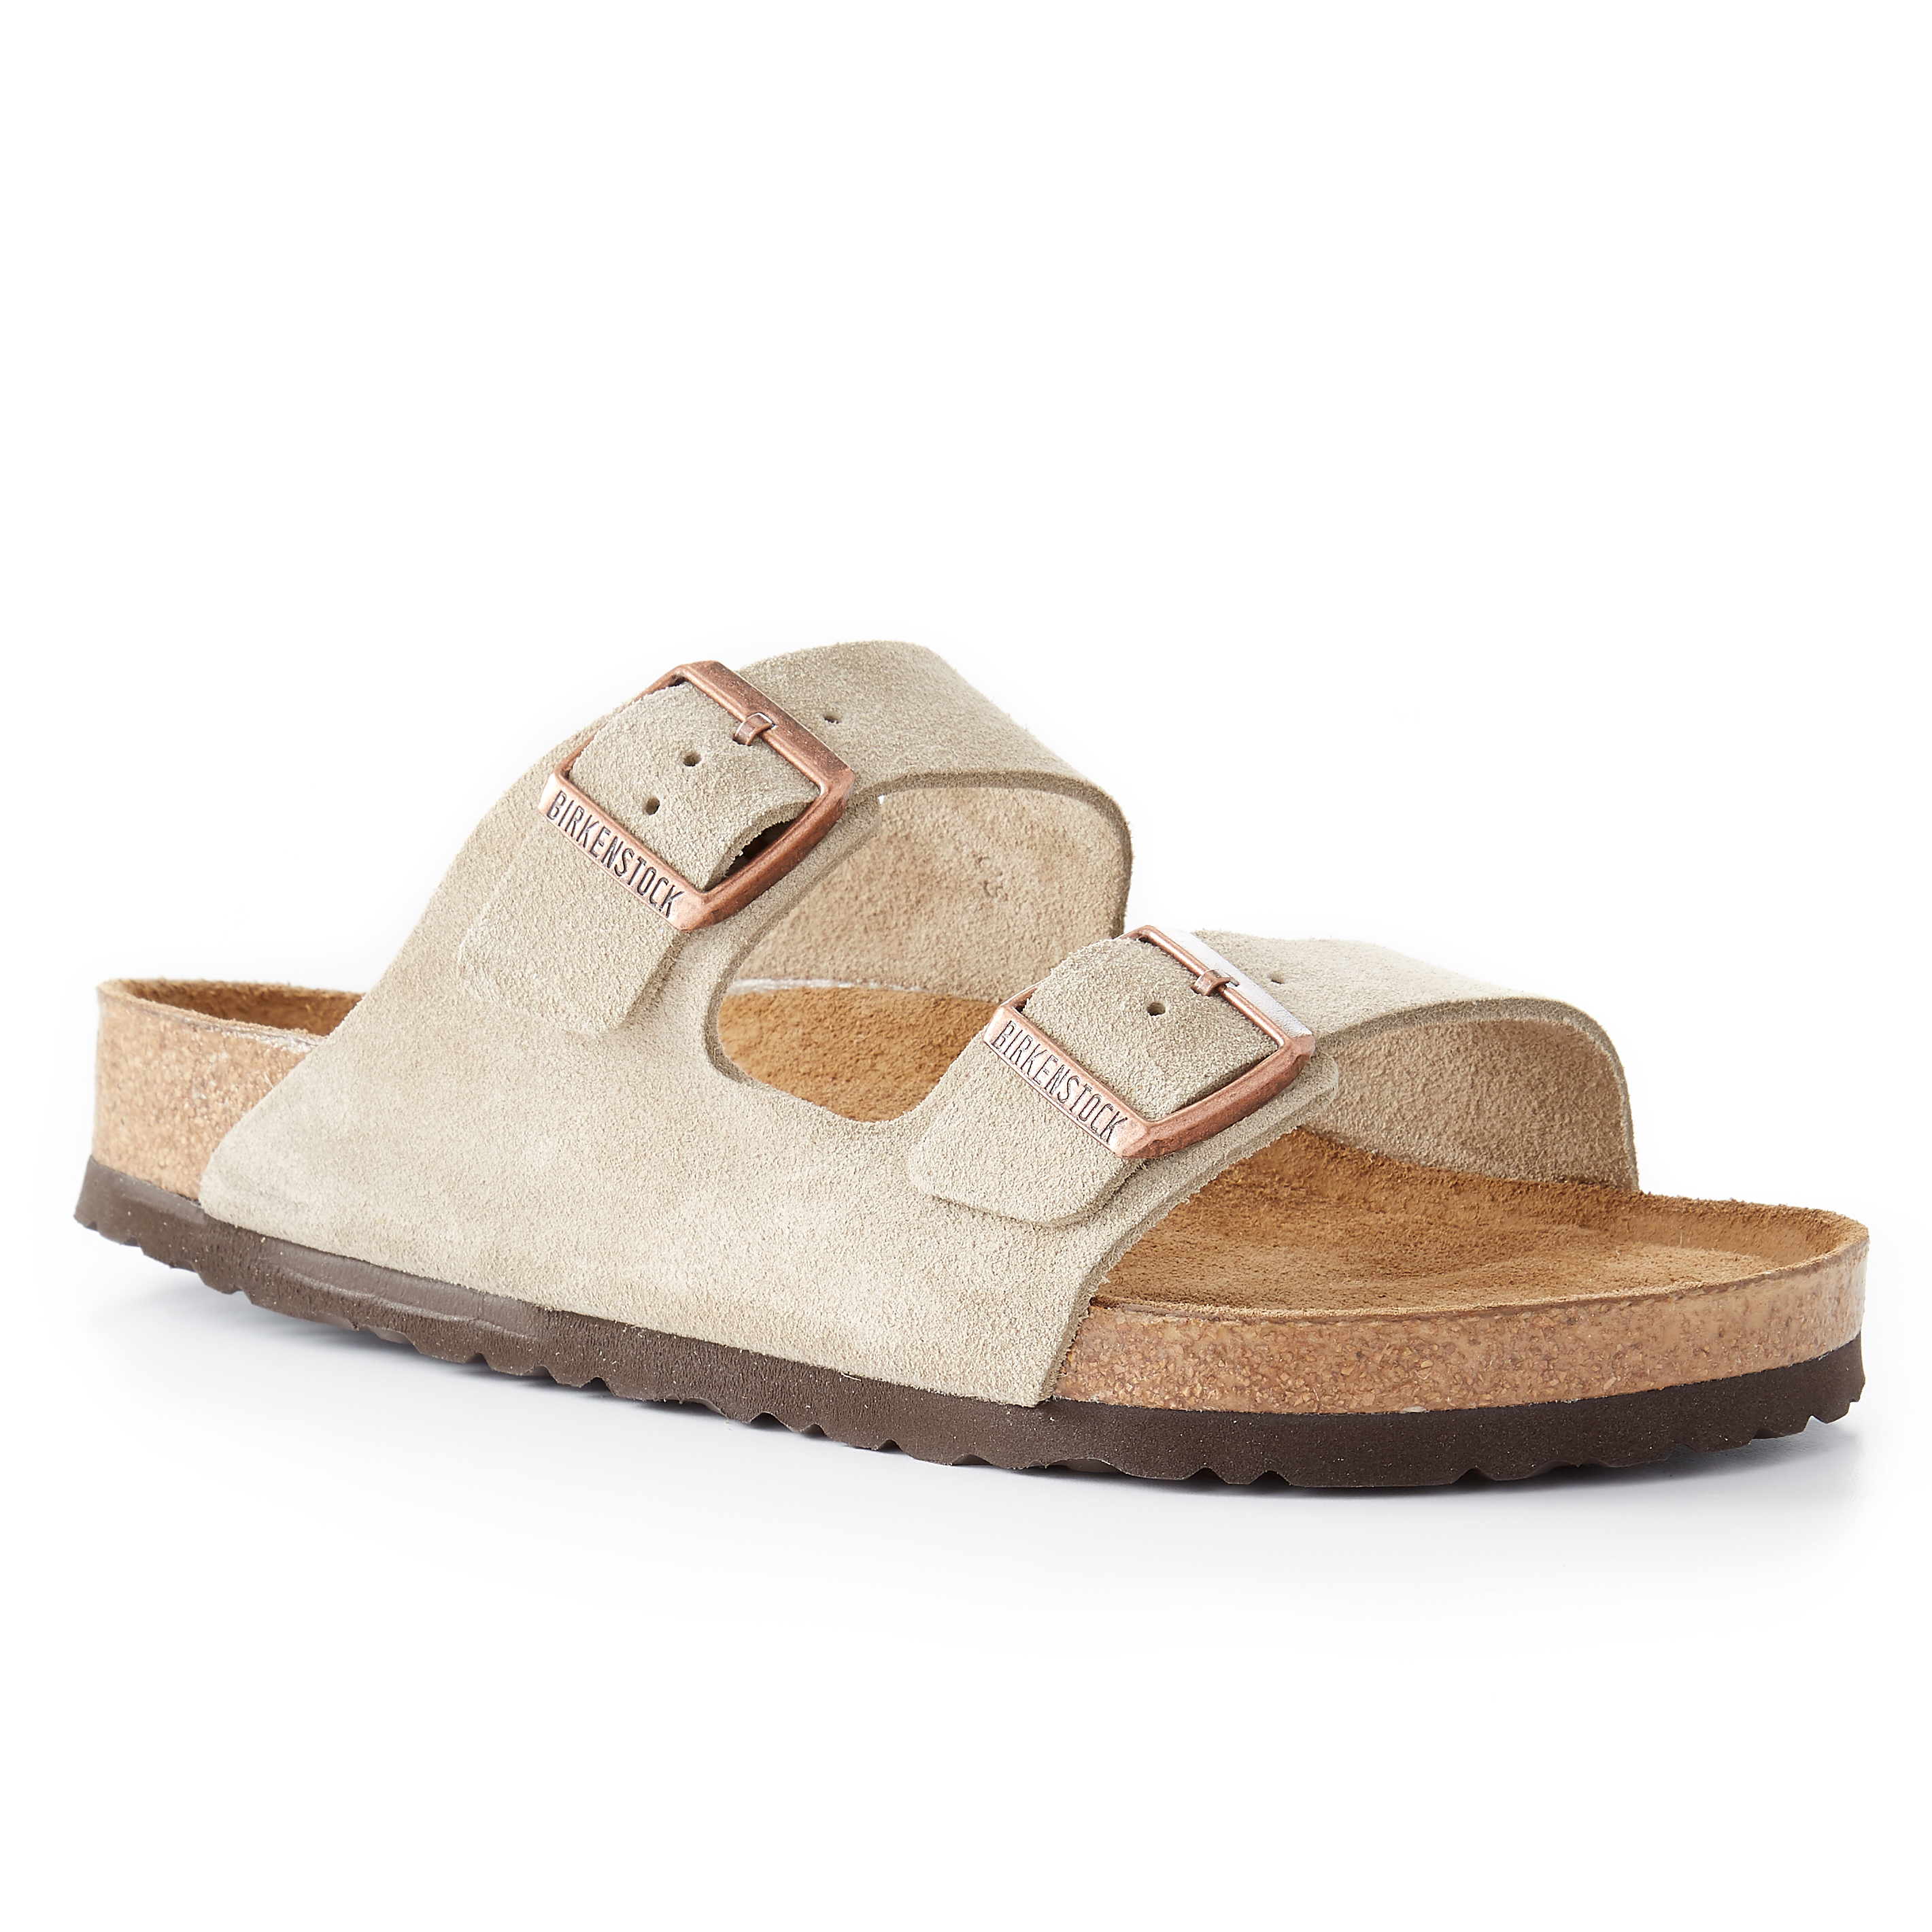 Birkenstock Arizona Sandal - Suede Leather | Sandals Huckberry